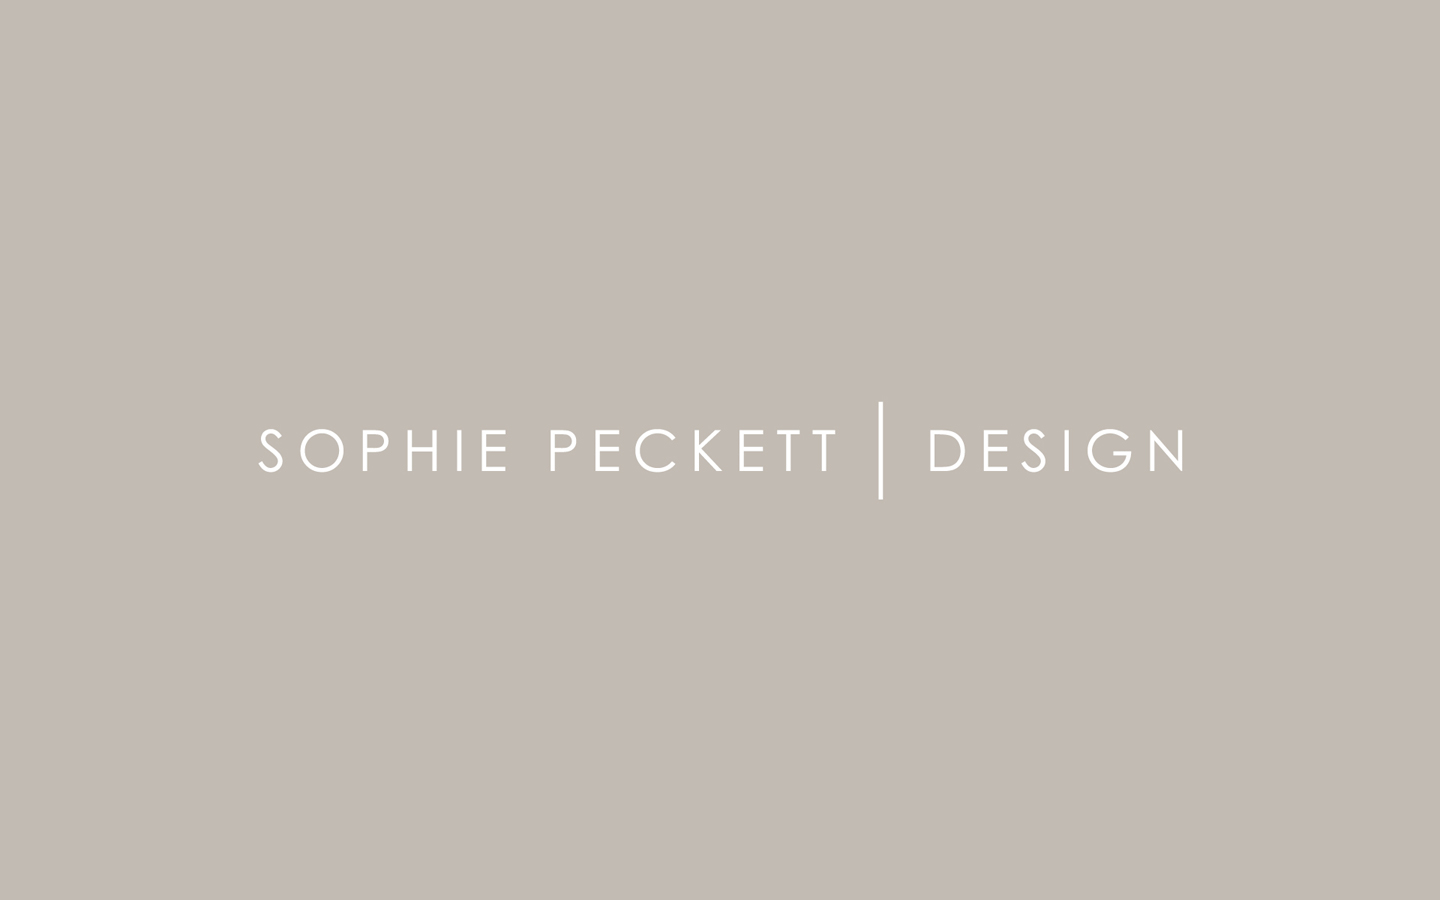 Sophie Peckett Logo Design in Brand Colours